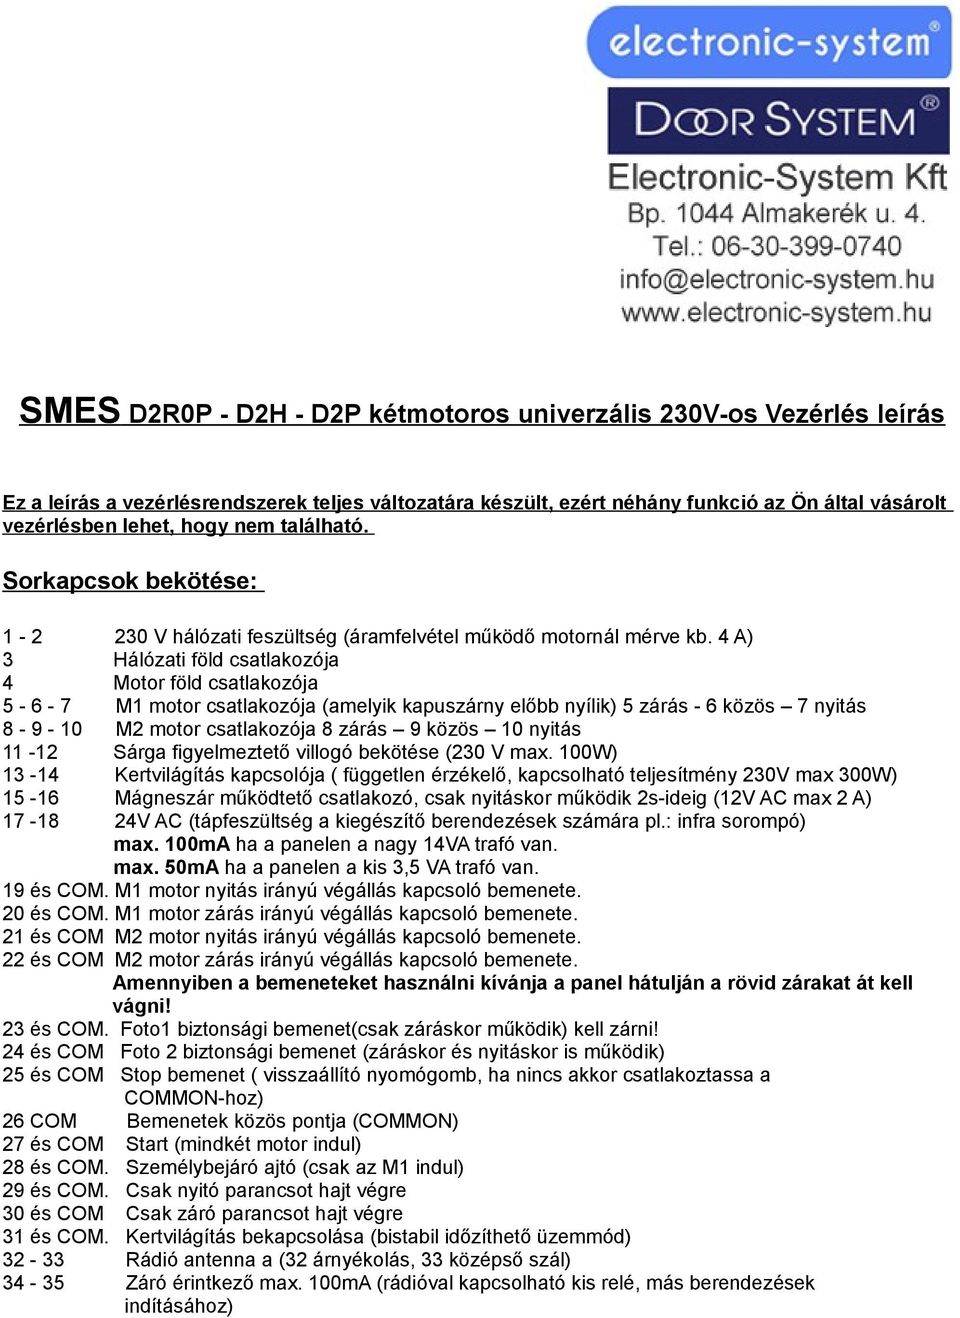 SMES D2R0P - D2H - D2P kétmotoros univerzális 230V-os Vezérlés leírás - PDF  Ingyenes letöltés